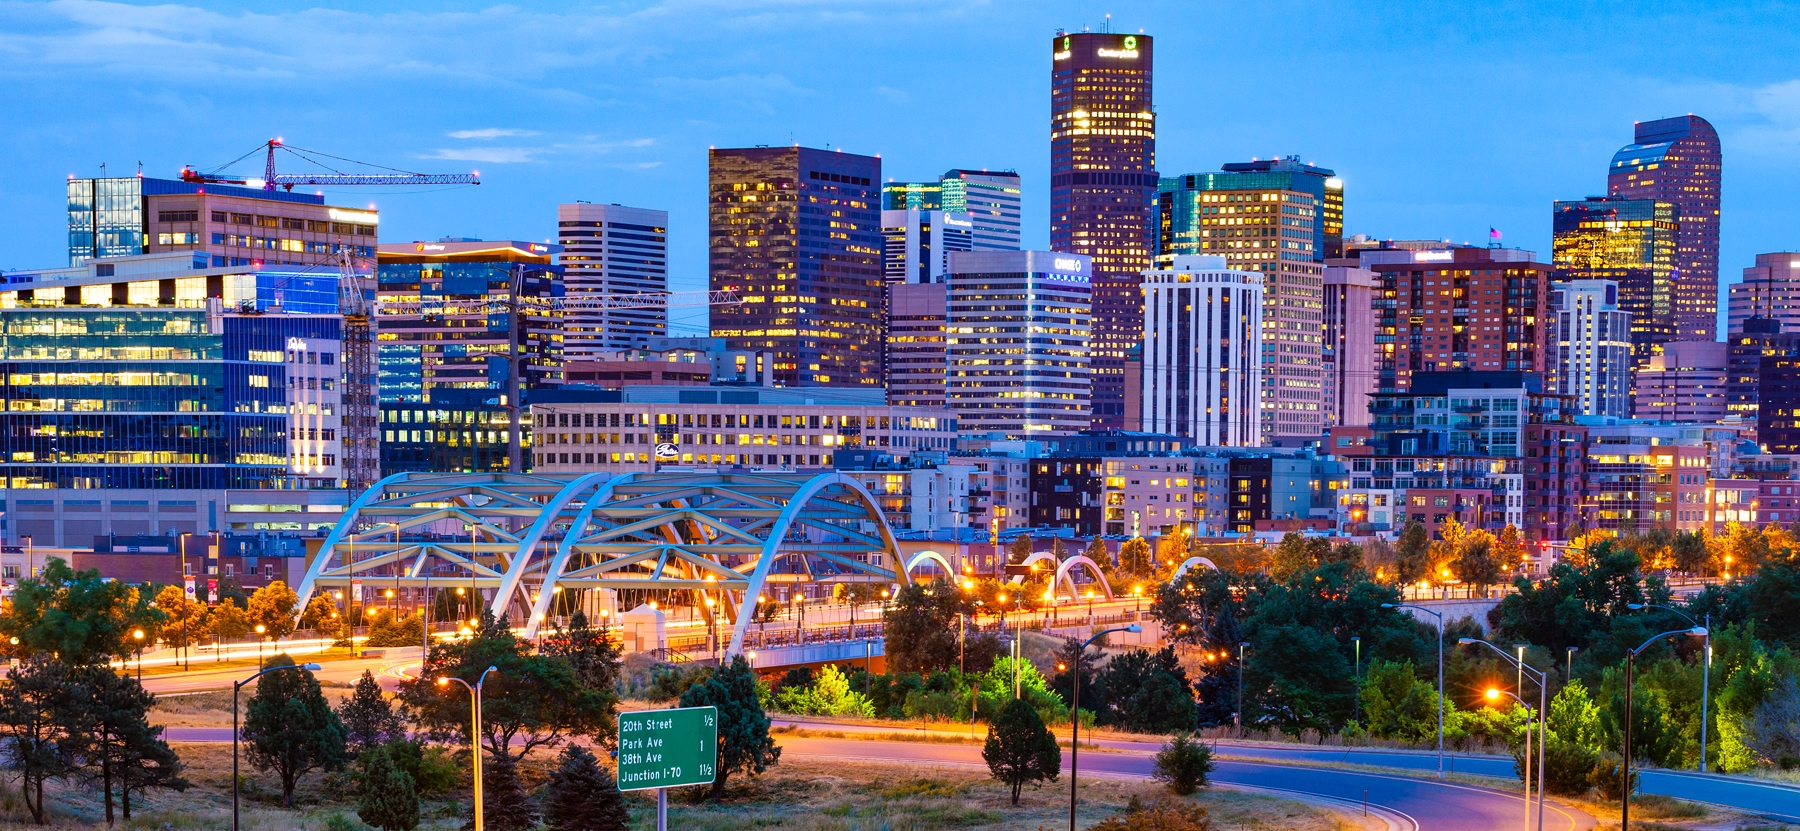 Denver skyline lit up at dusk.